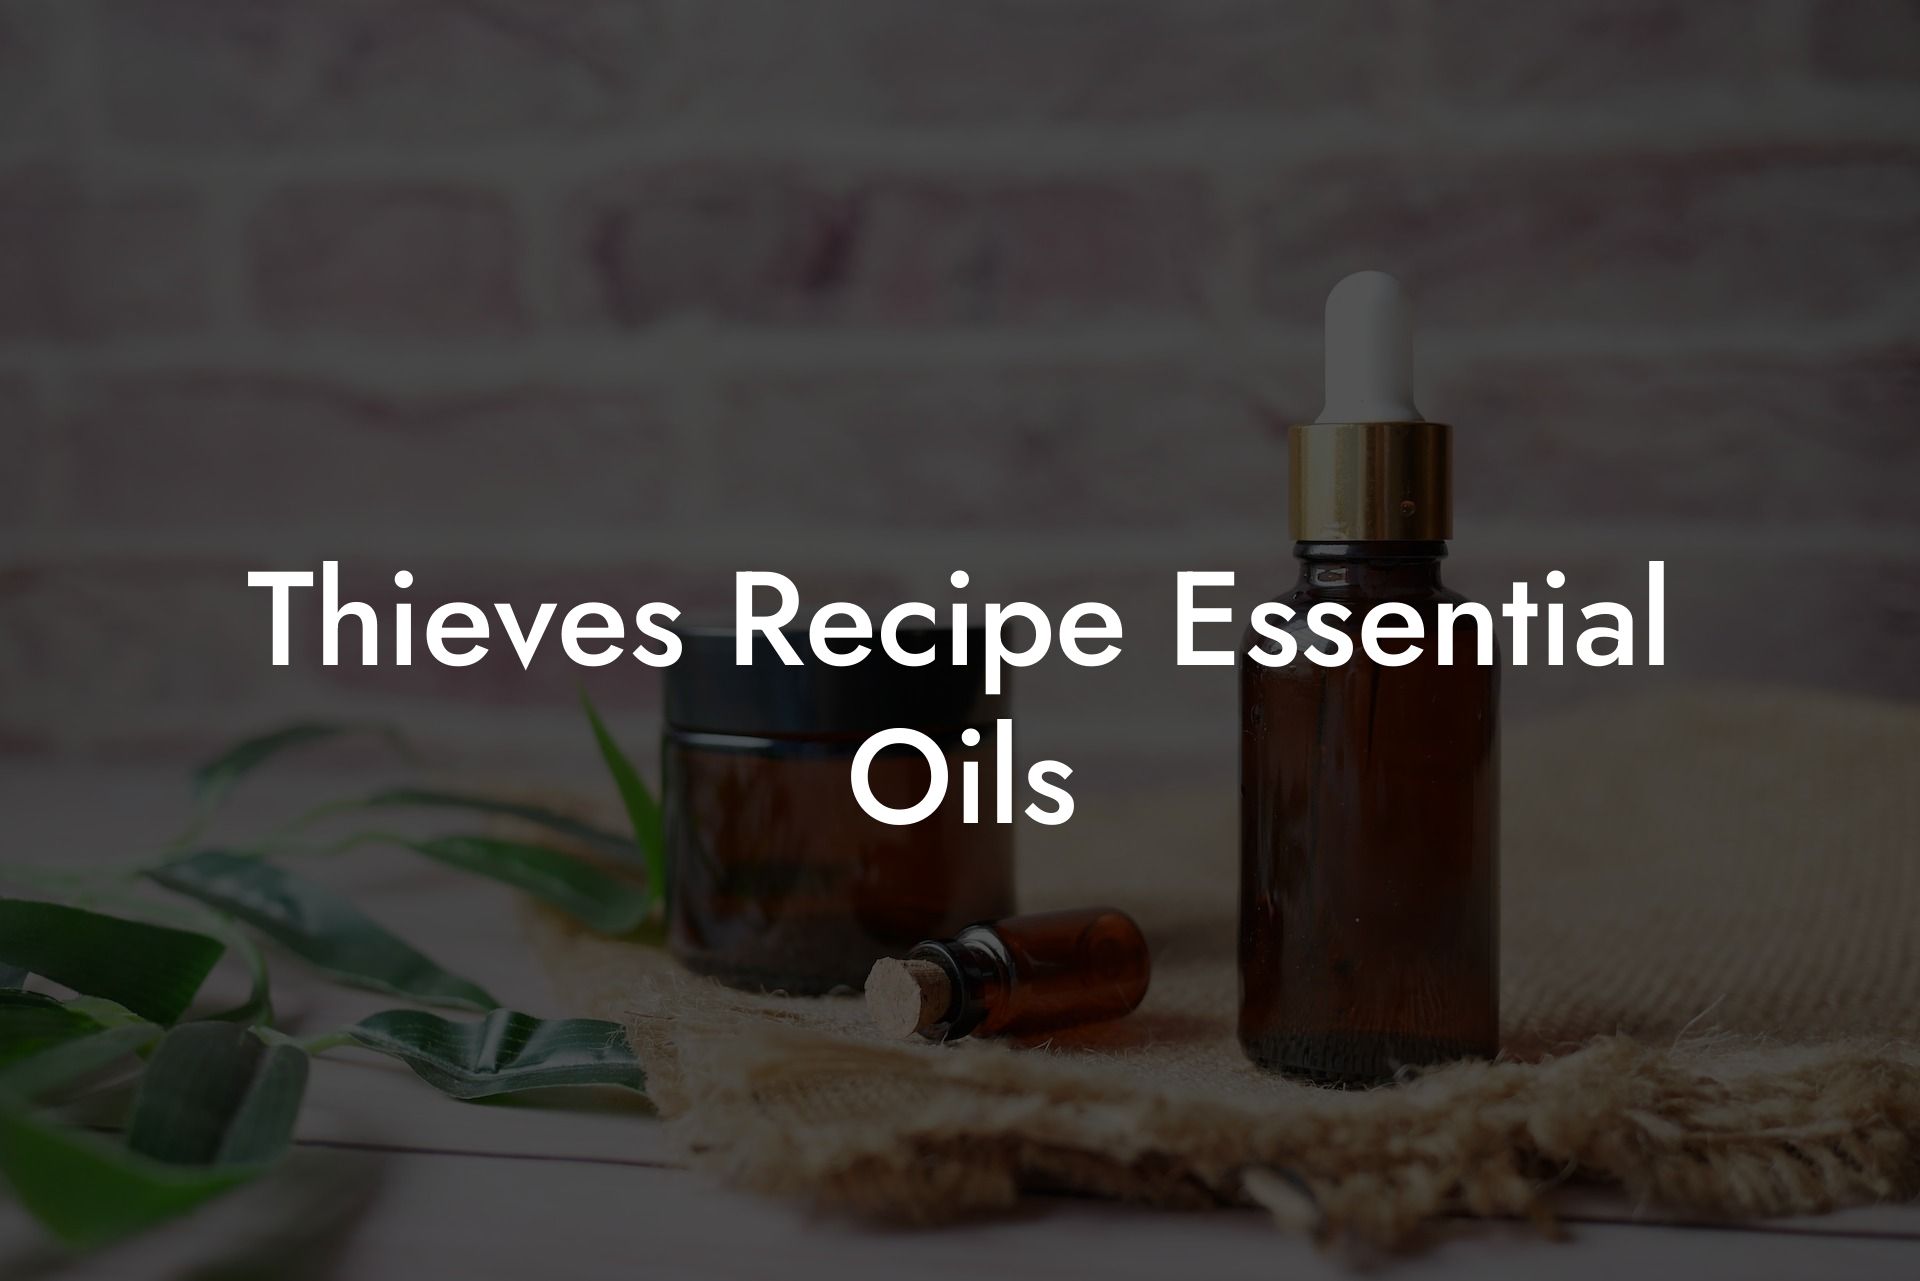 Thieves Recipe Essential Oils